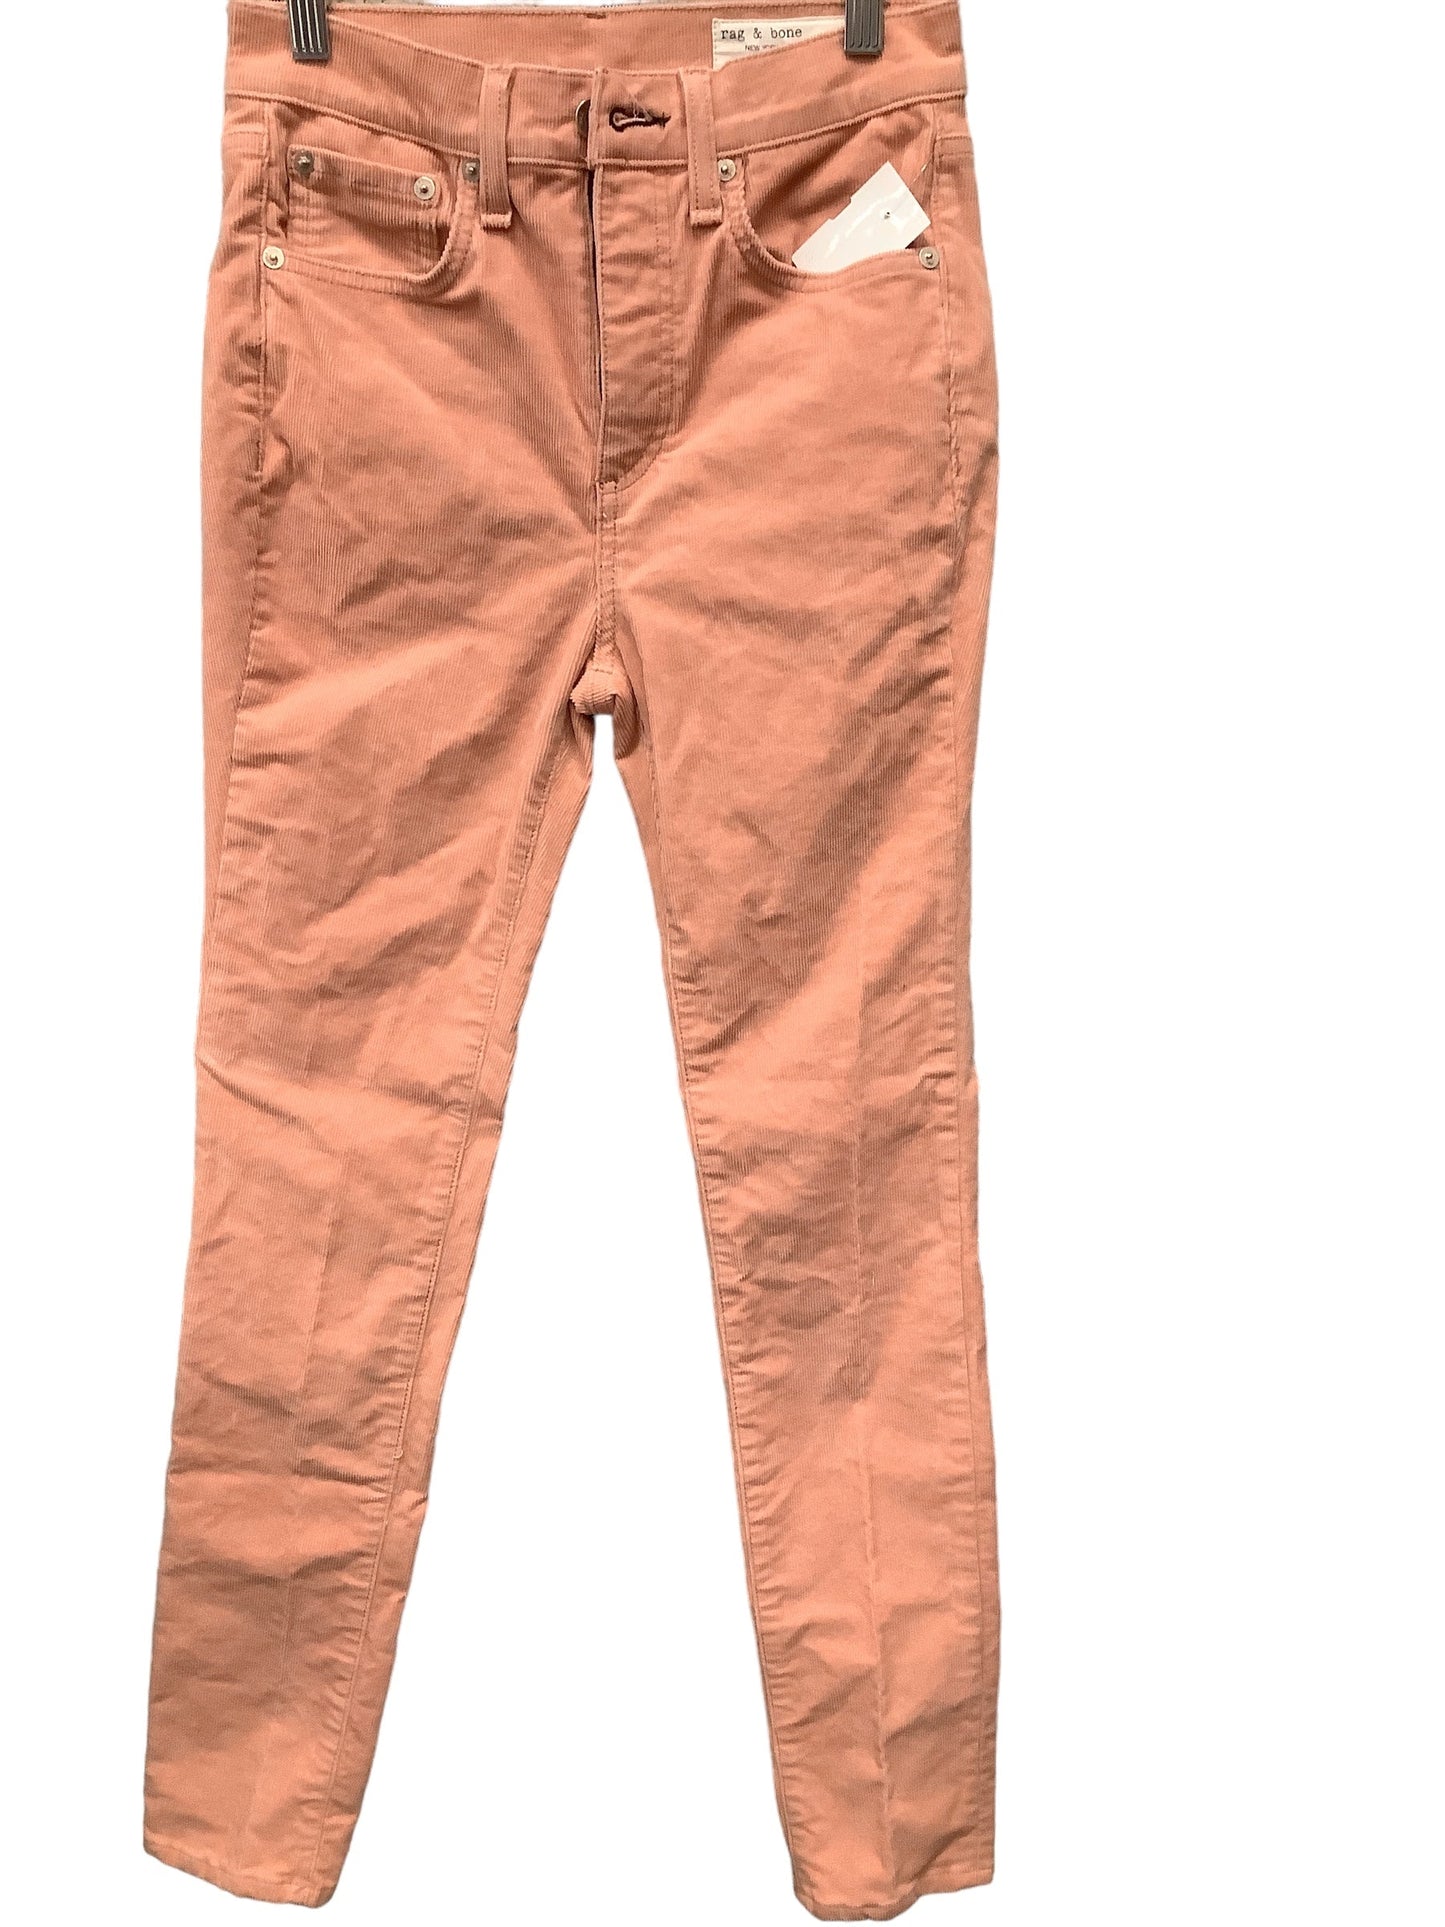 Pink Jeans Designer Rag And Bone, Size 2